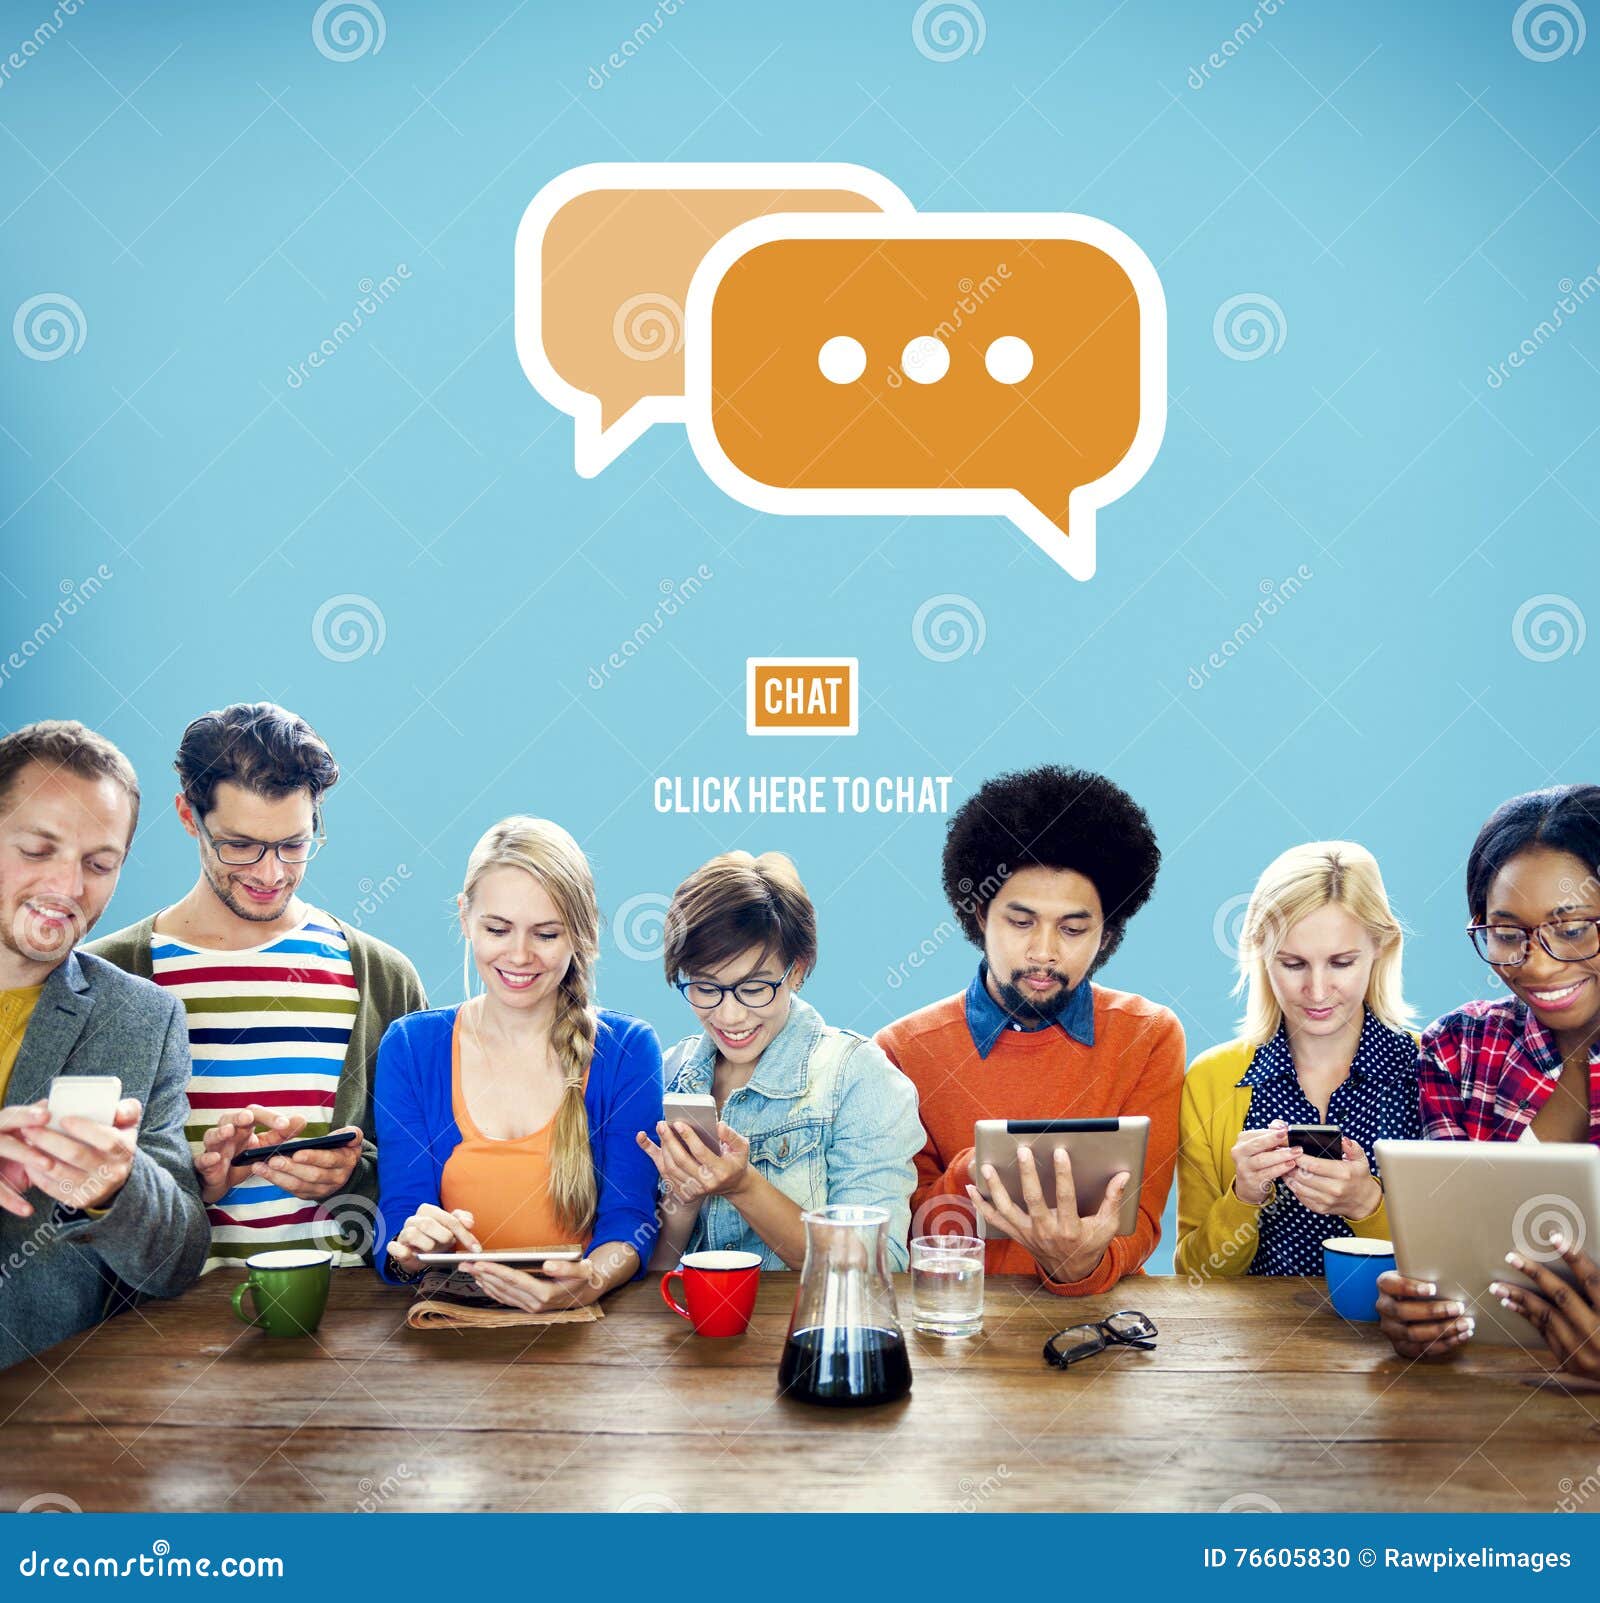 communicate socialize talk connect technology concept